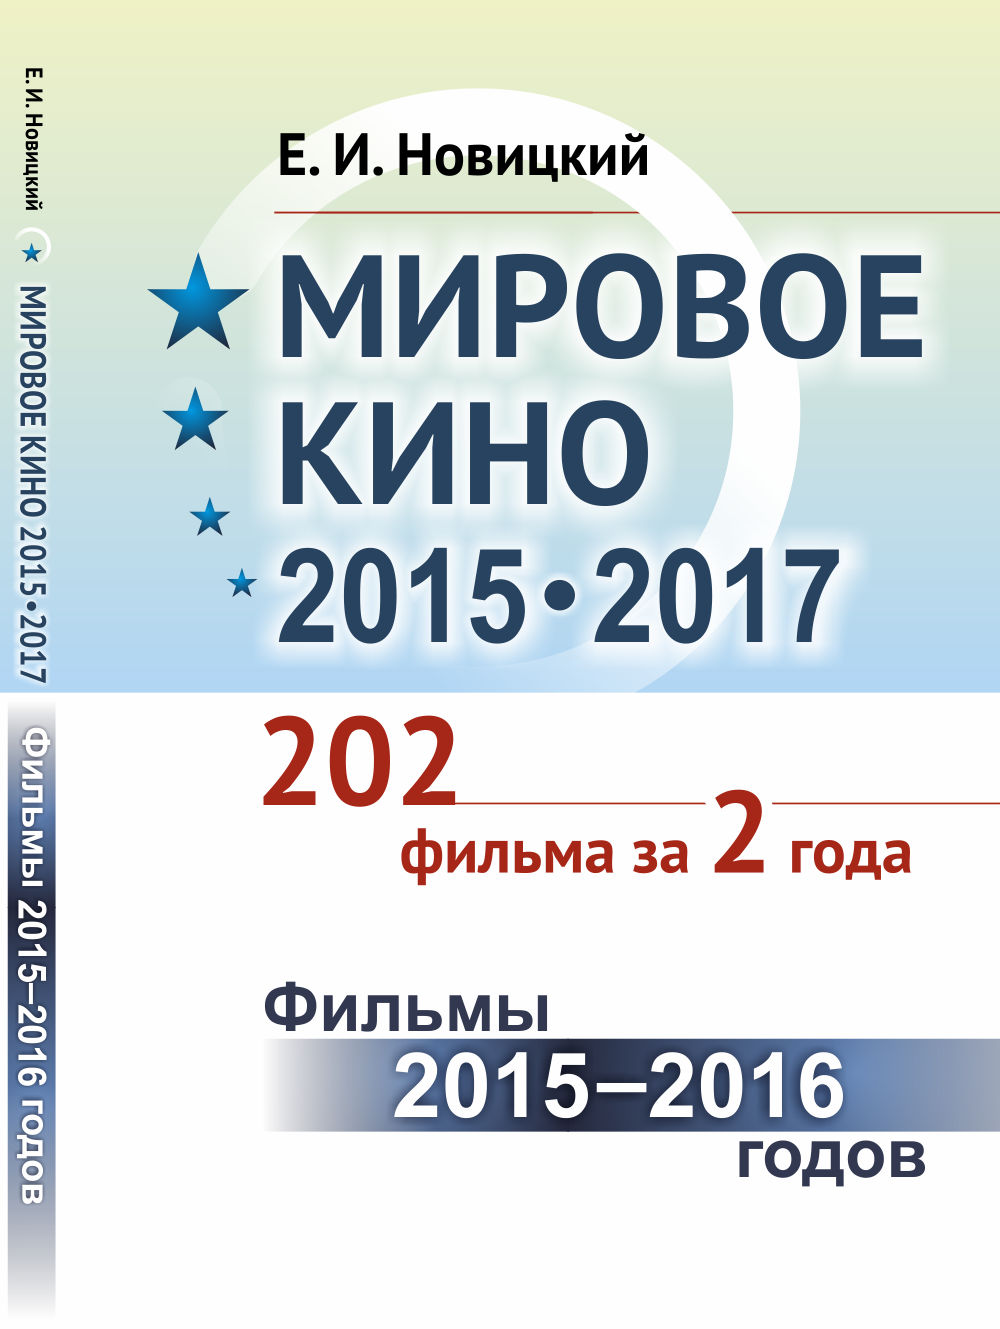   2015-2017: 202   2 .:  2015 -- 2016 